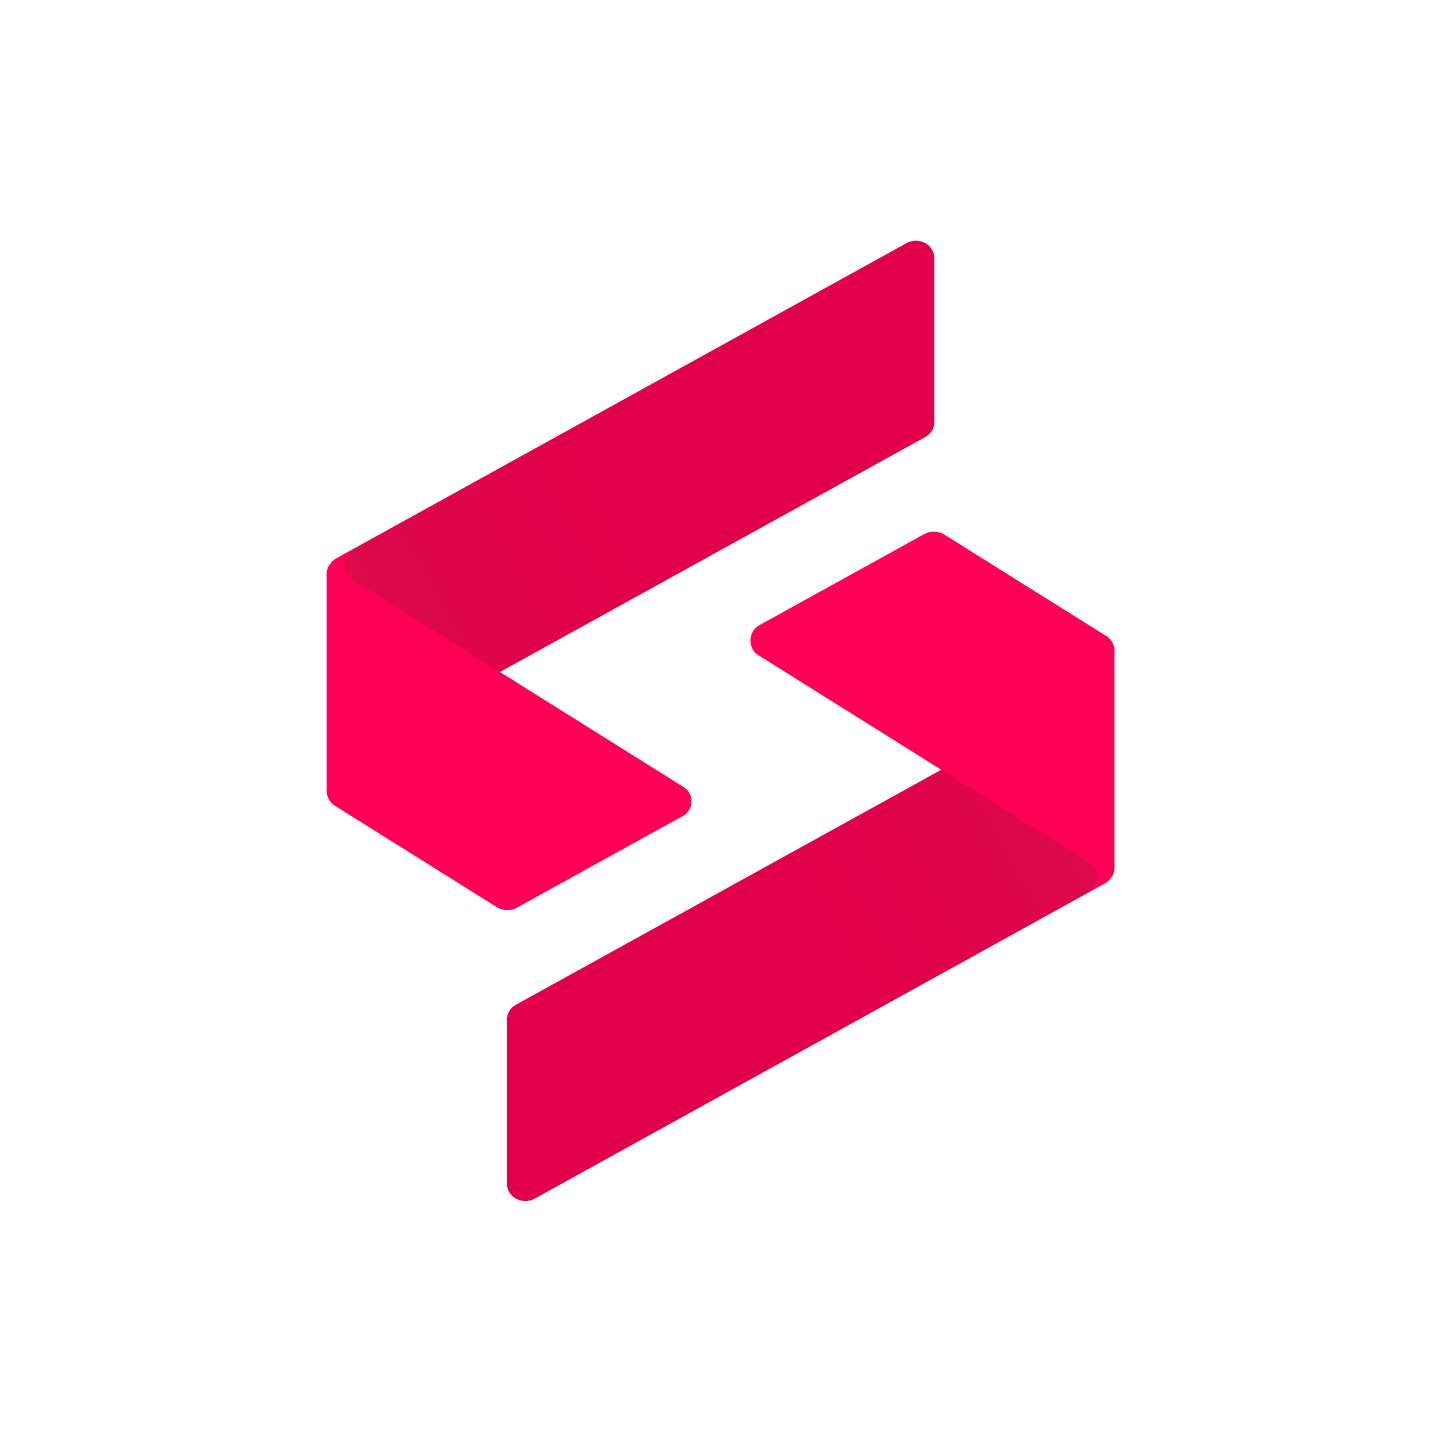 SuperOps.ai logo